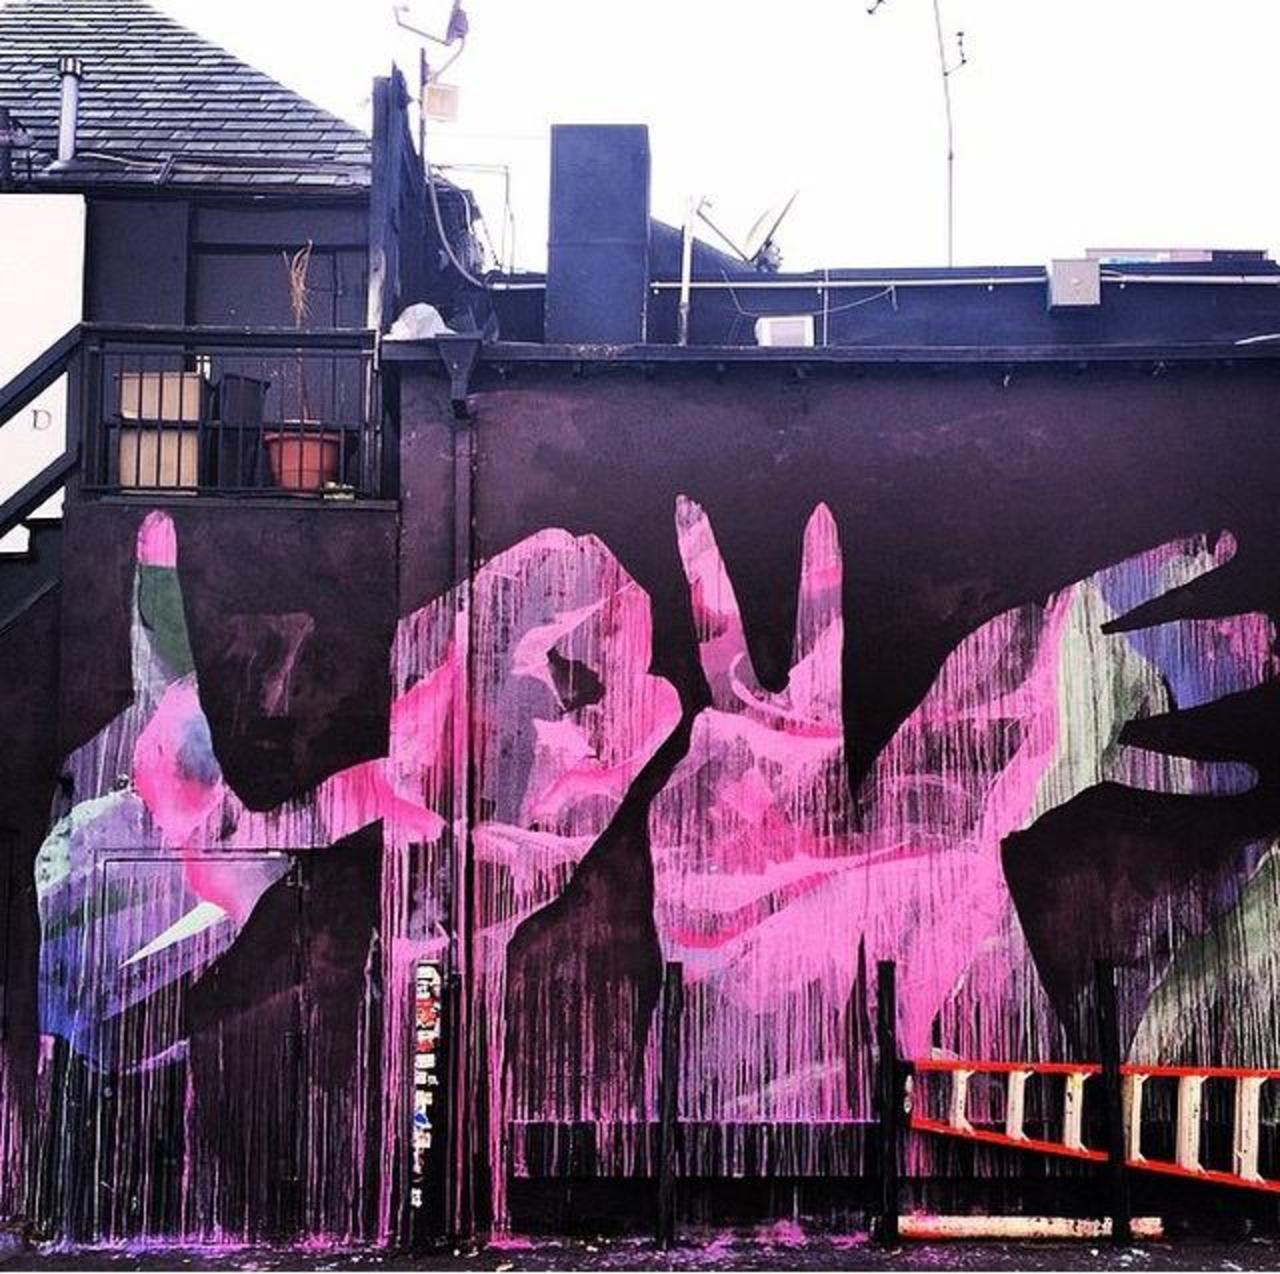 'Love' 
Street Art by Michael Owen ❤️

#art #arte #graffiti #streetart http://t.co/3h929xusKx